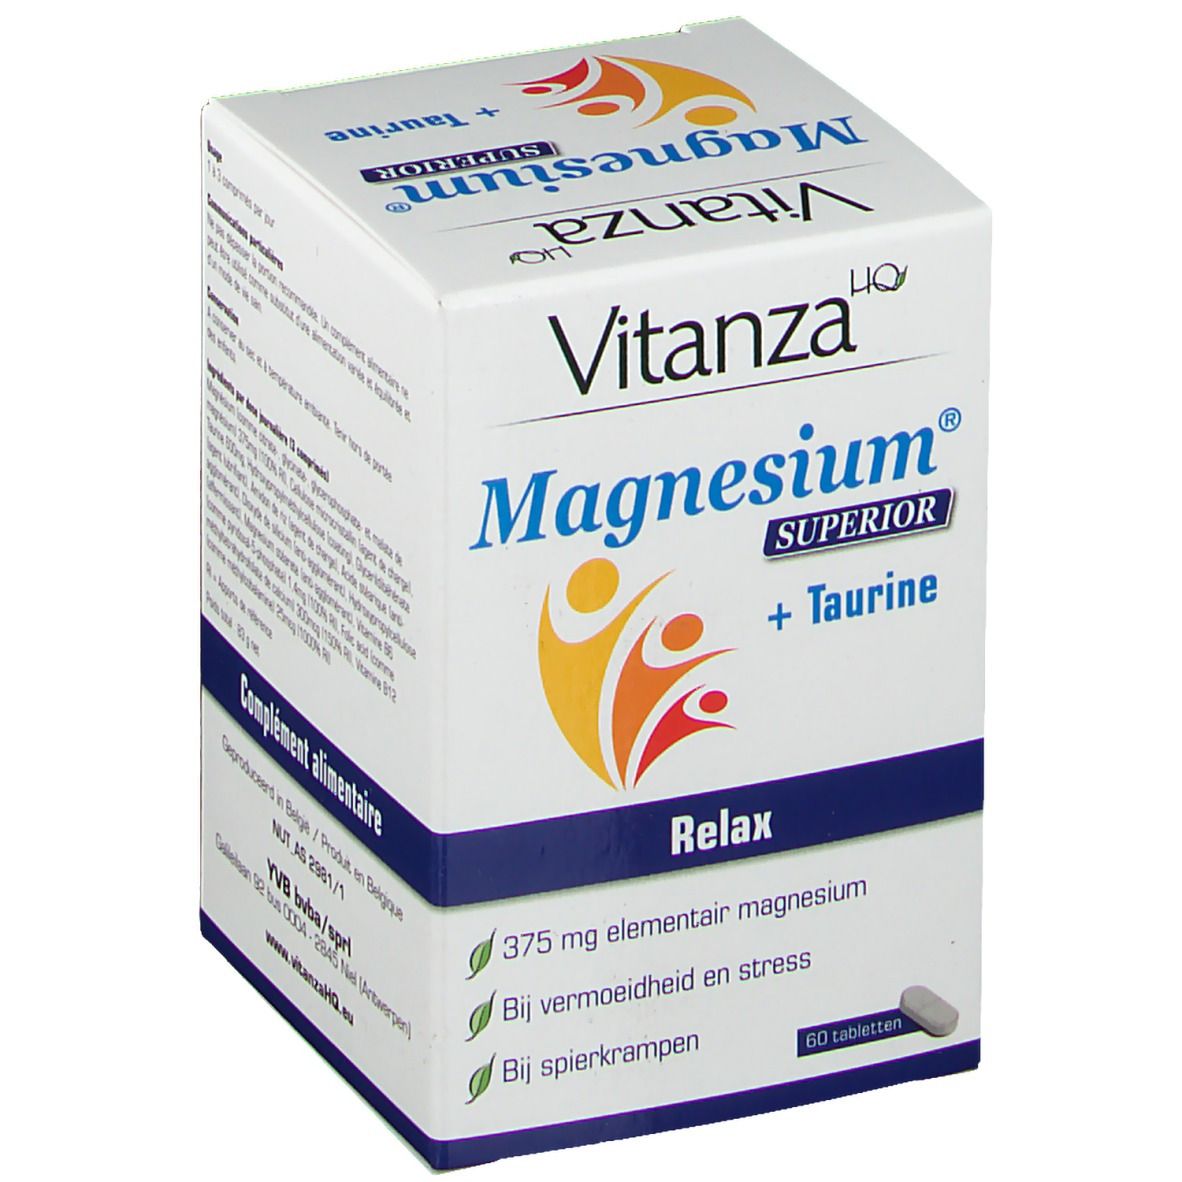 Vitanza HQ Magnesium Superior